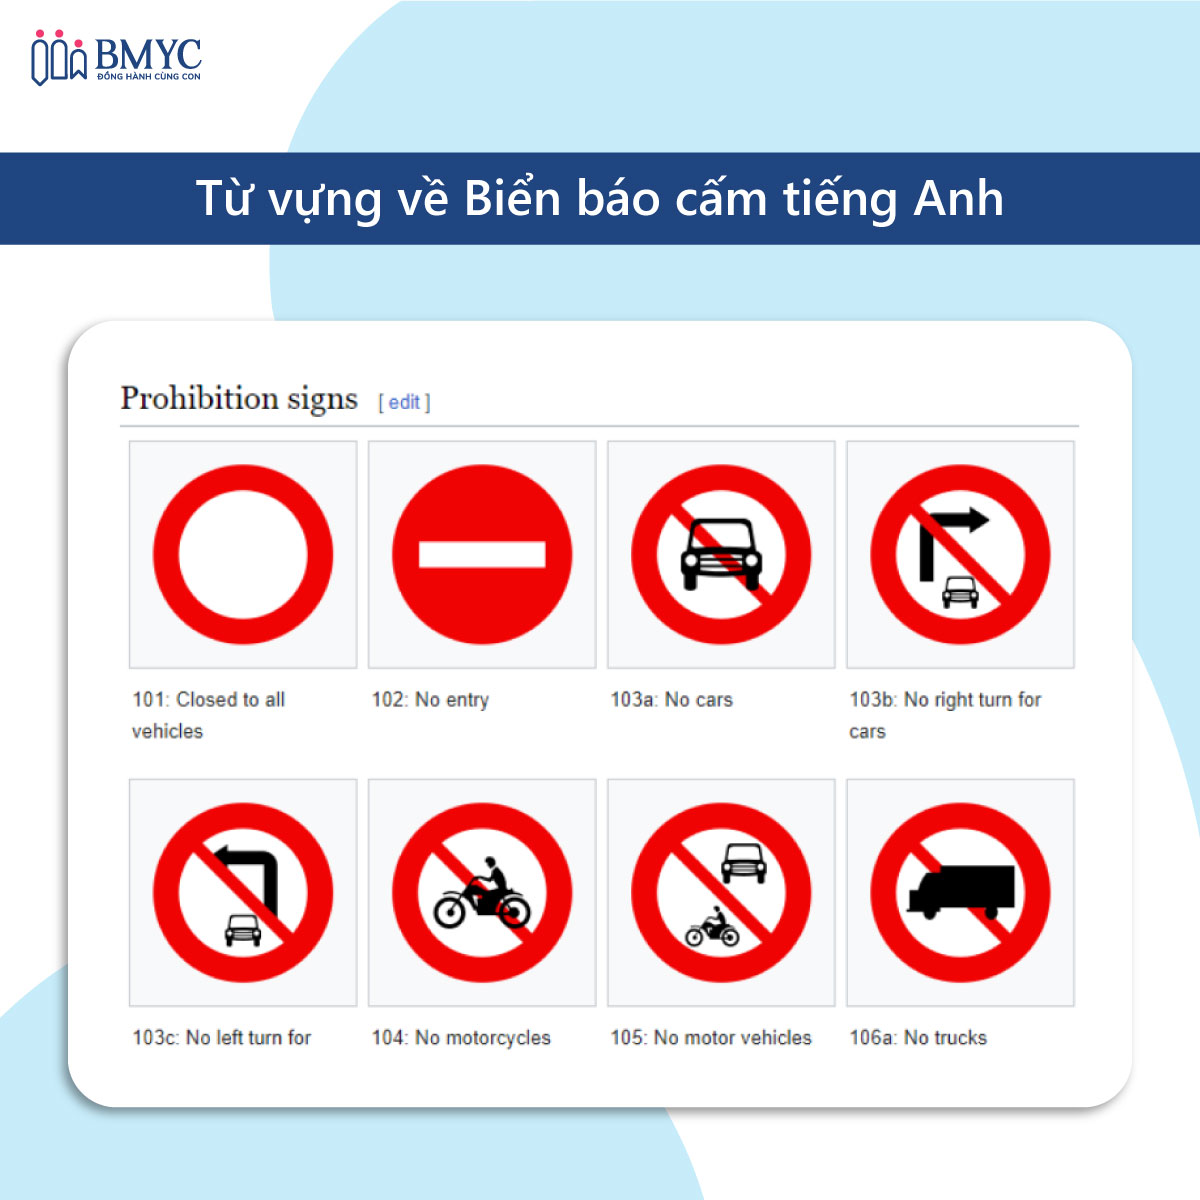 Biển báo giao thông bằng tiếng Anh - biển báo cấm